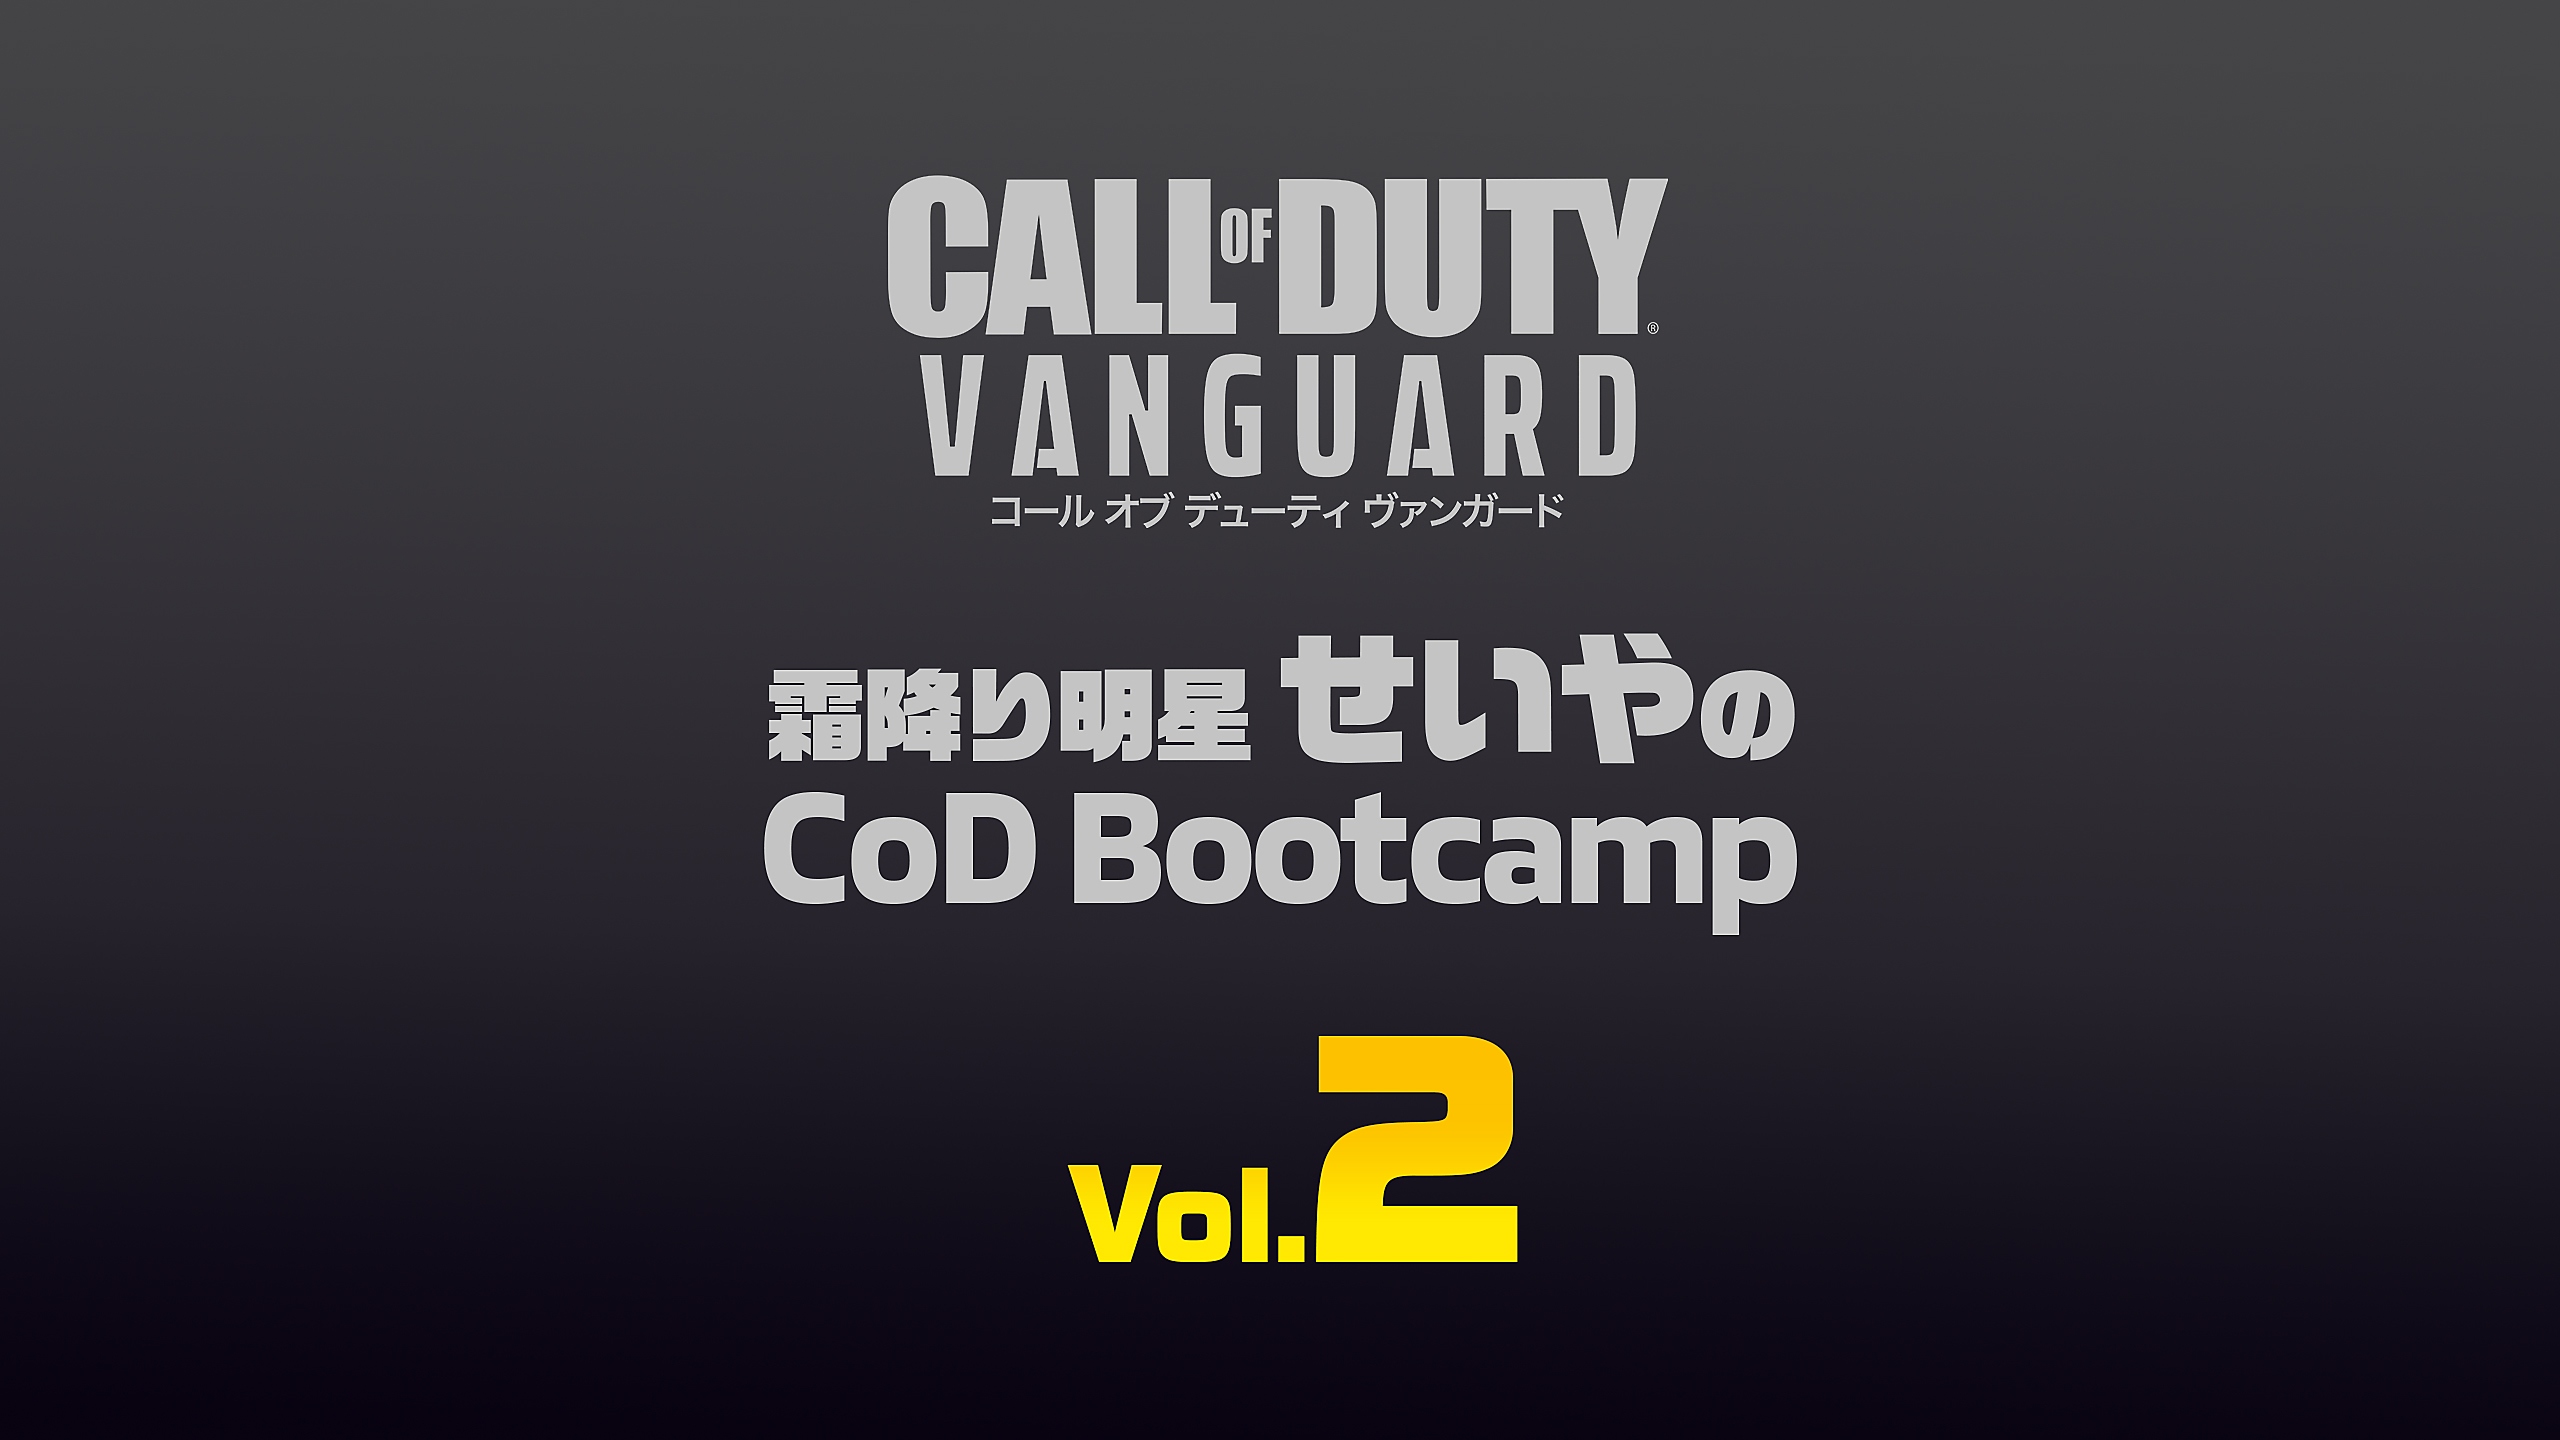 『コール オブ デューティ ヴァンガード』 霜降り明星せいやのCoD Bootcamp Vol.2